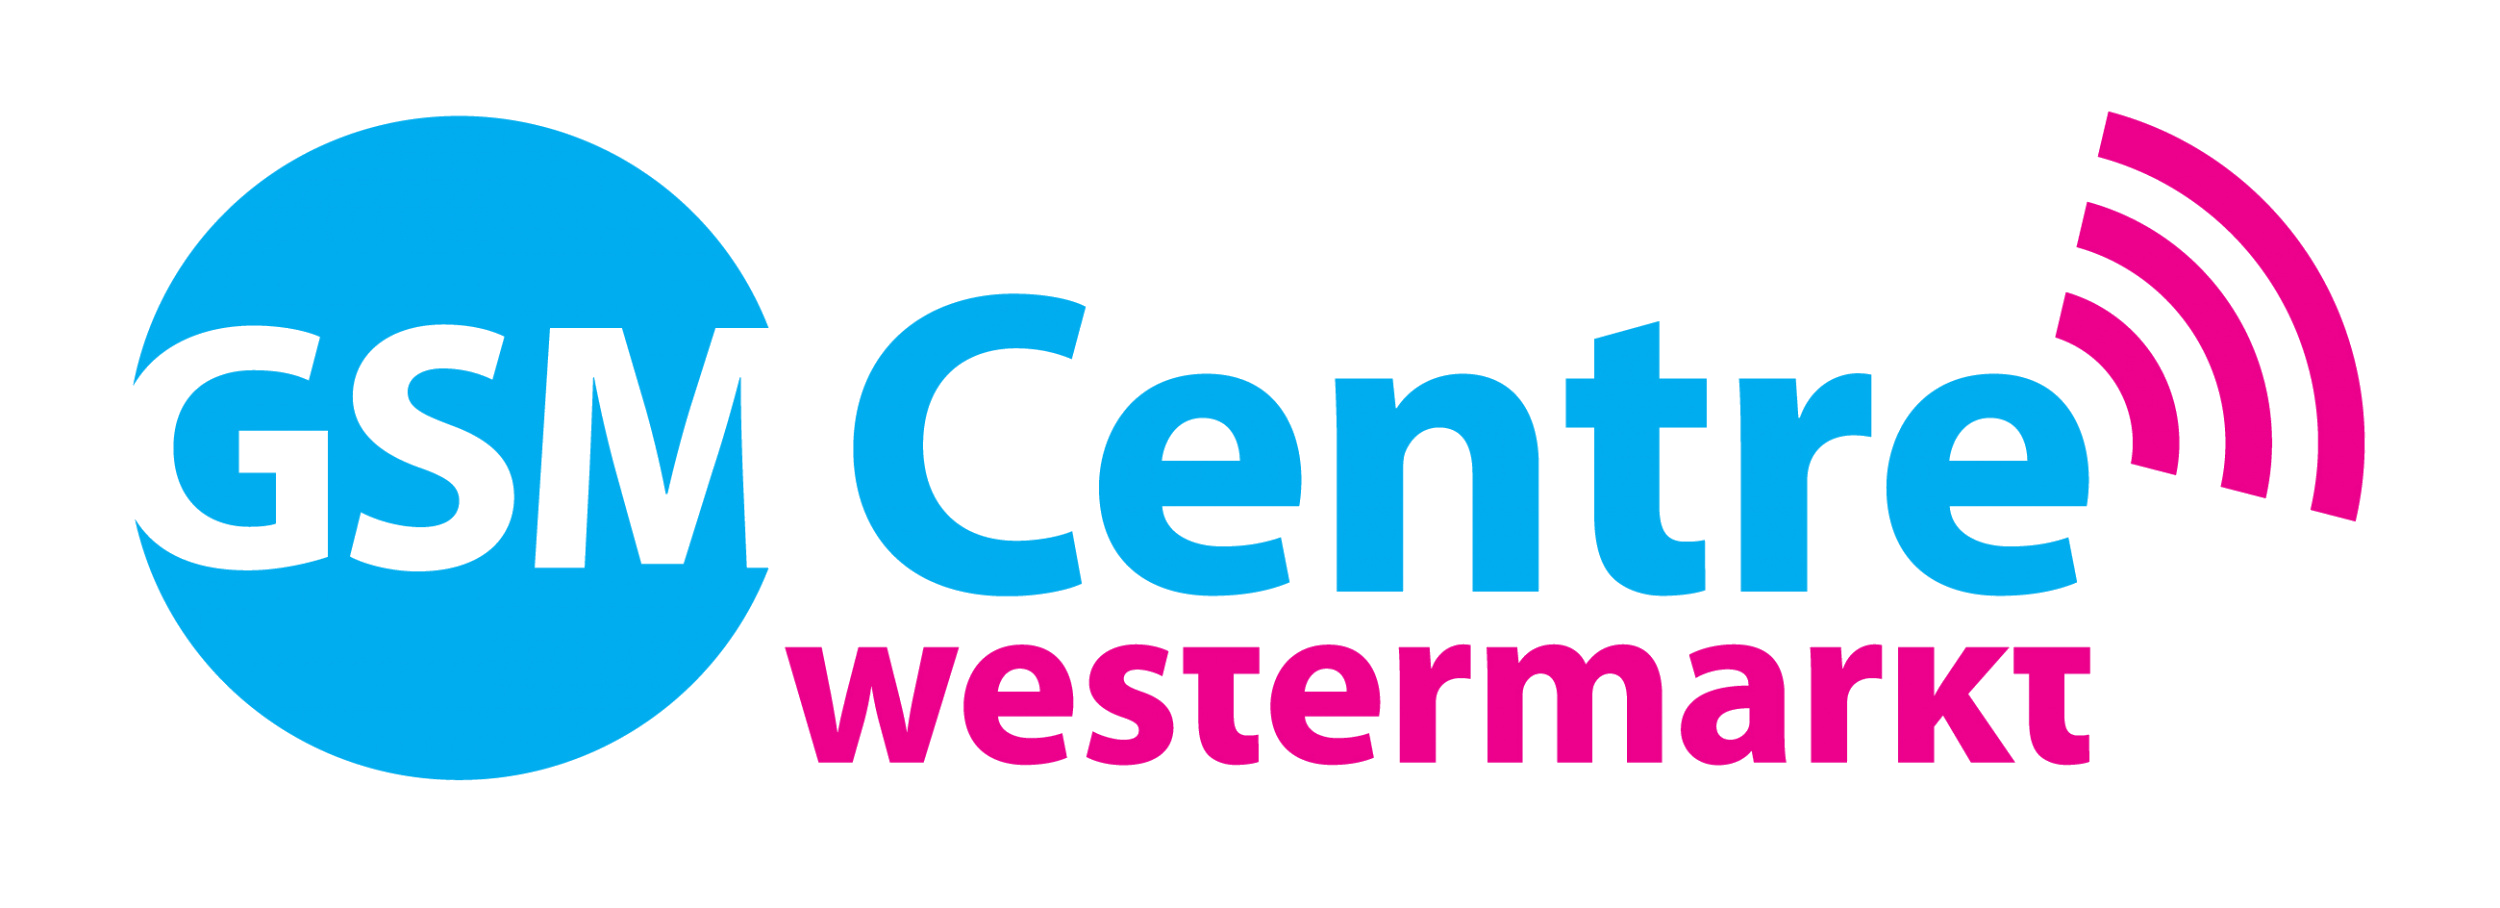 223-478-355-Logo-GSM-Centre-Westermarkt-JPG-1634730115.png